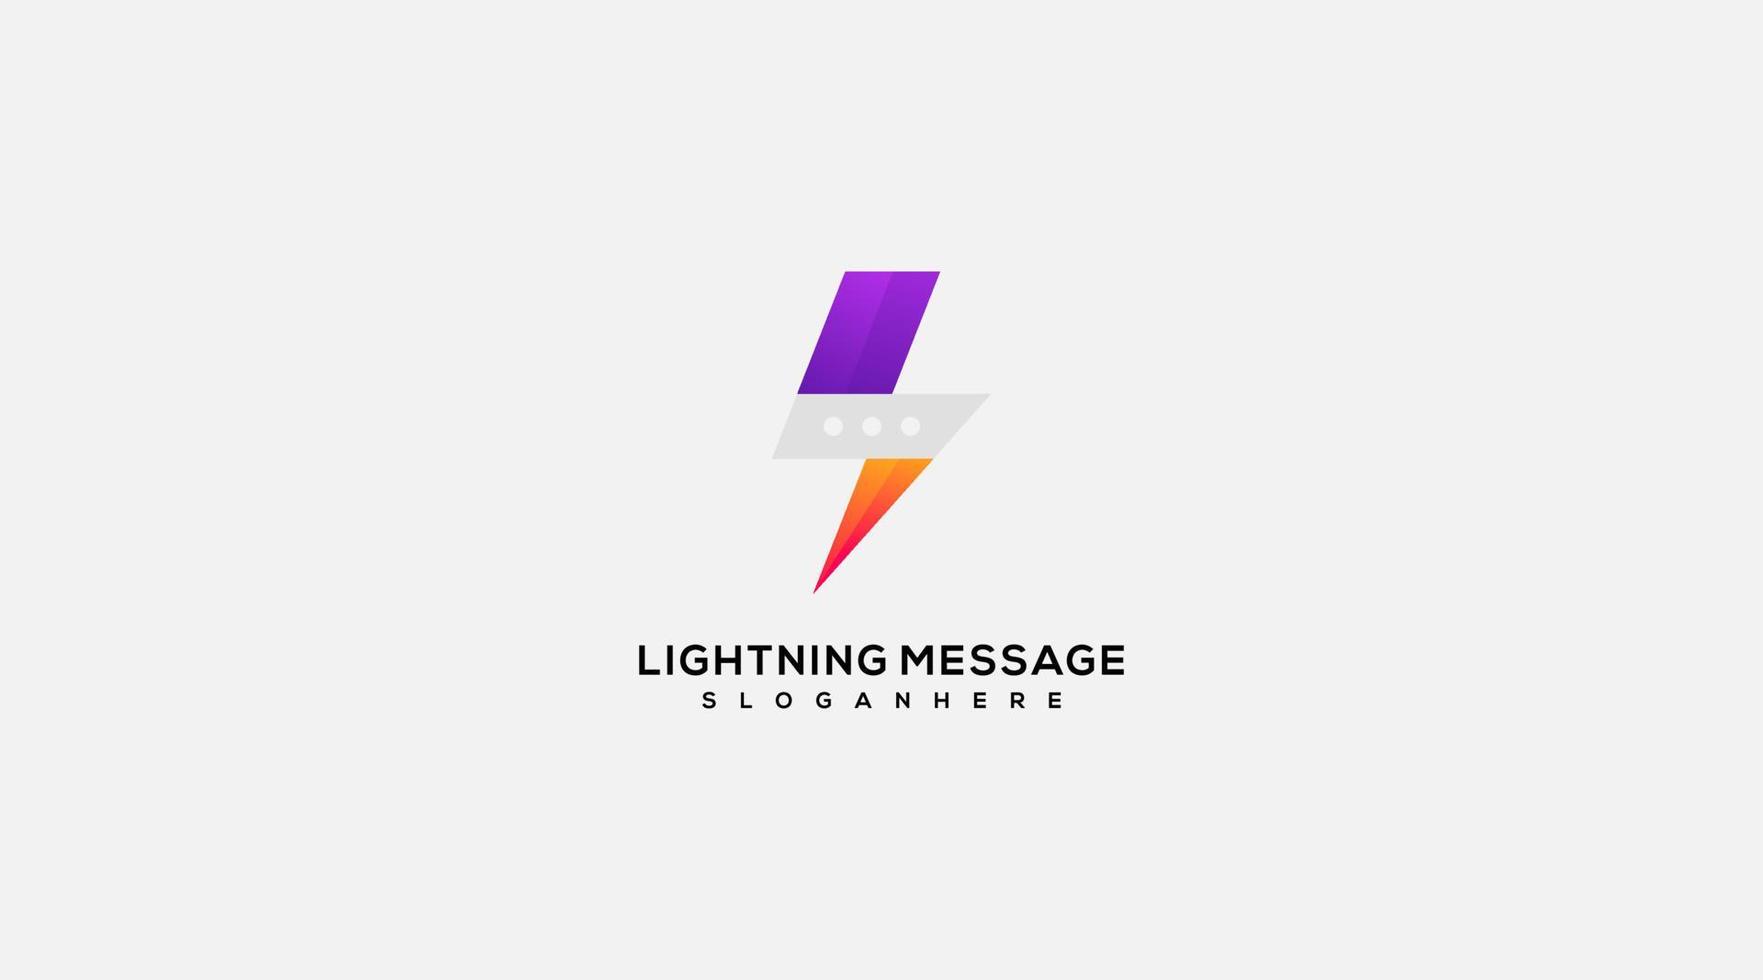 Lightning message vector logo design illustration